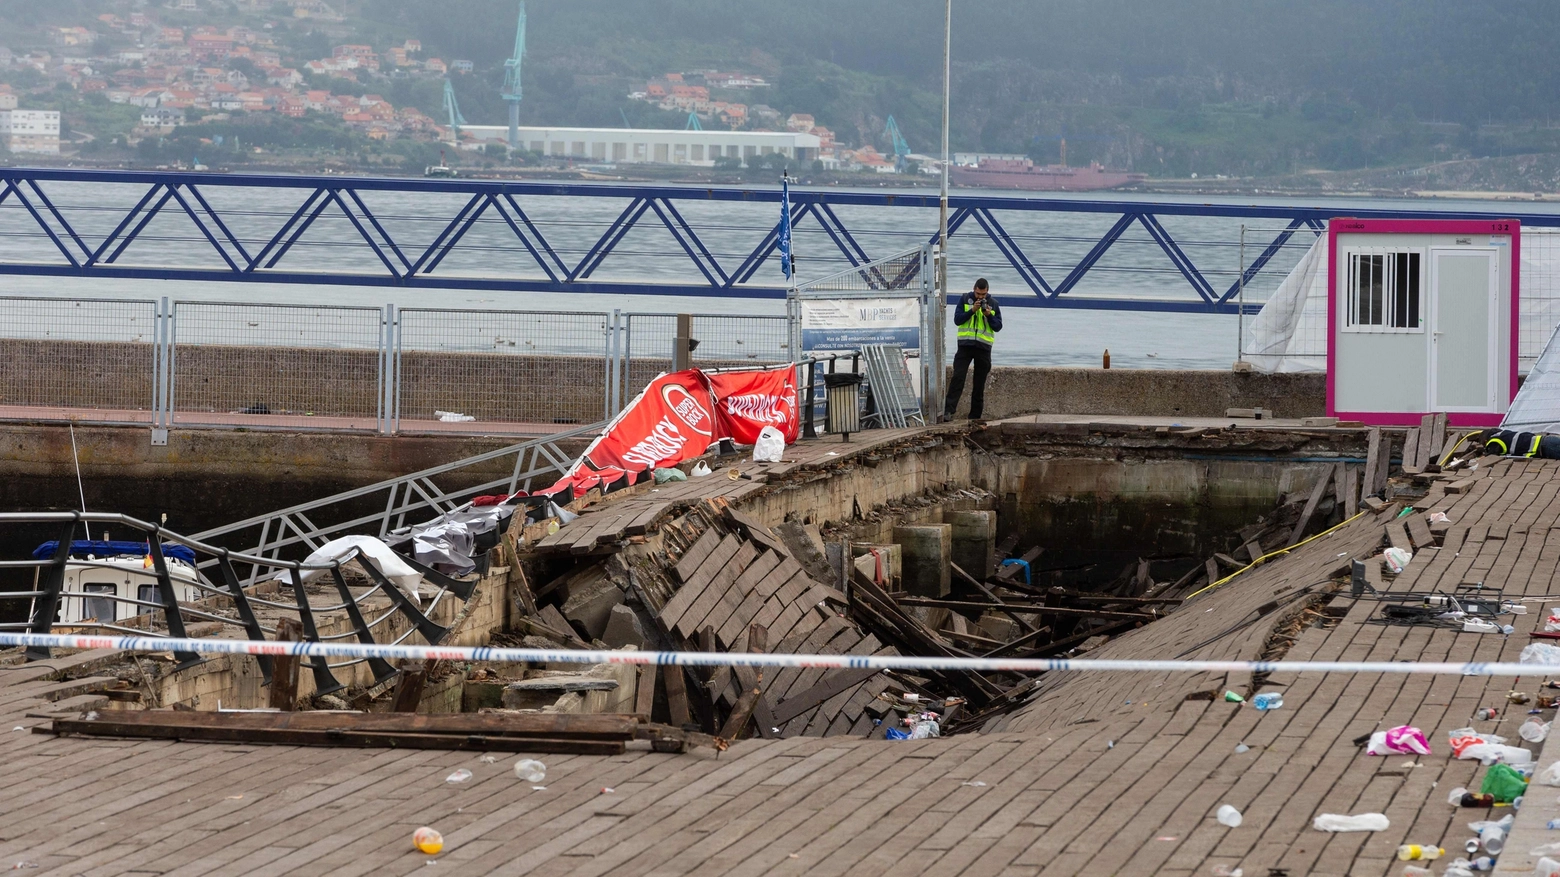 La piattaforma crollata a Vigo, in Spagna